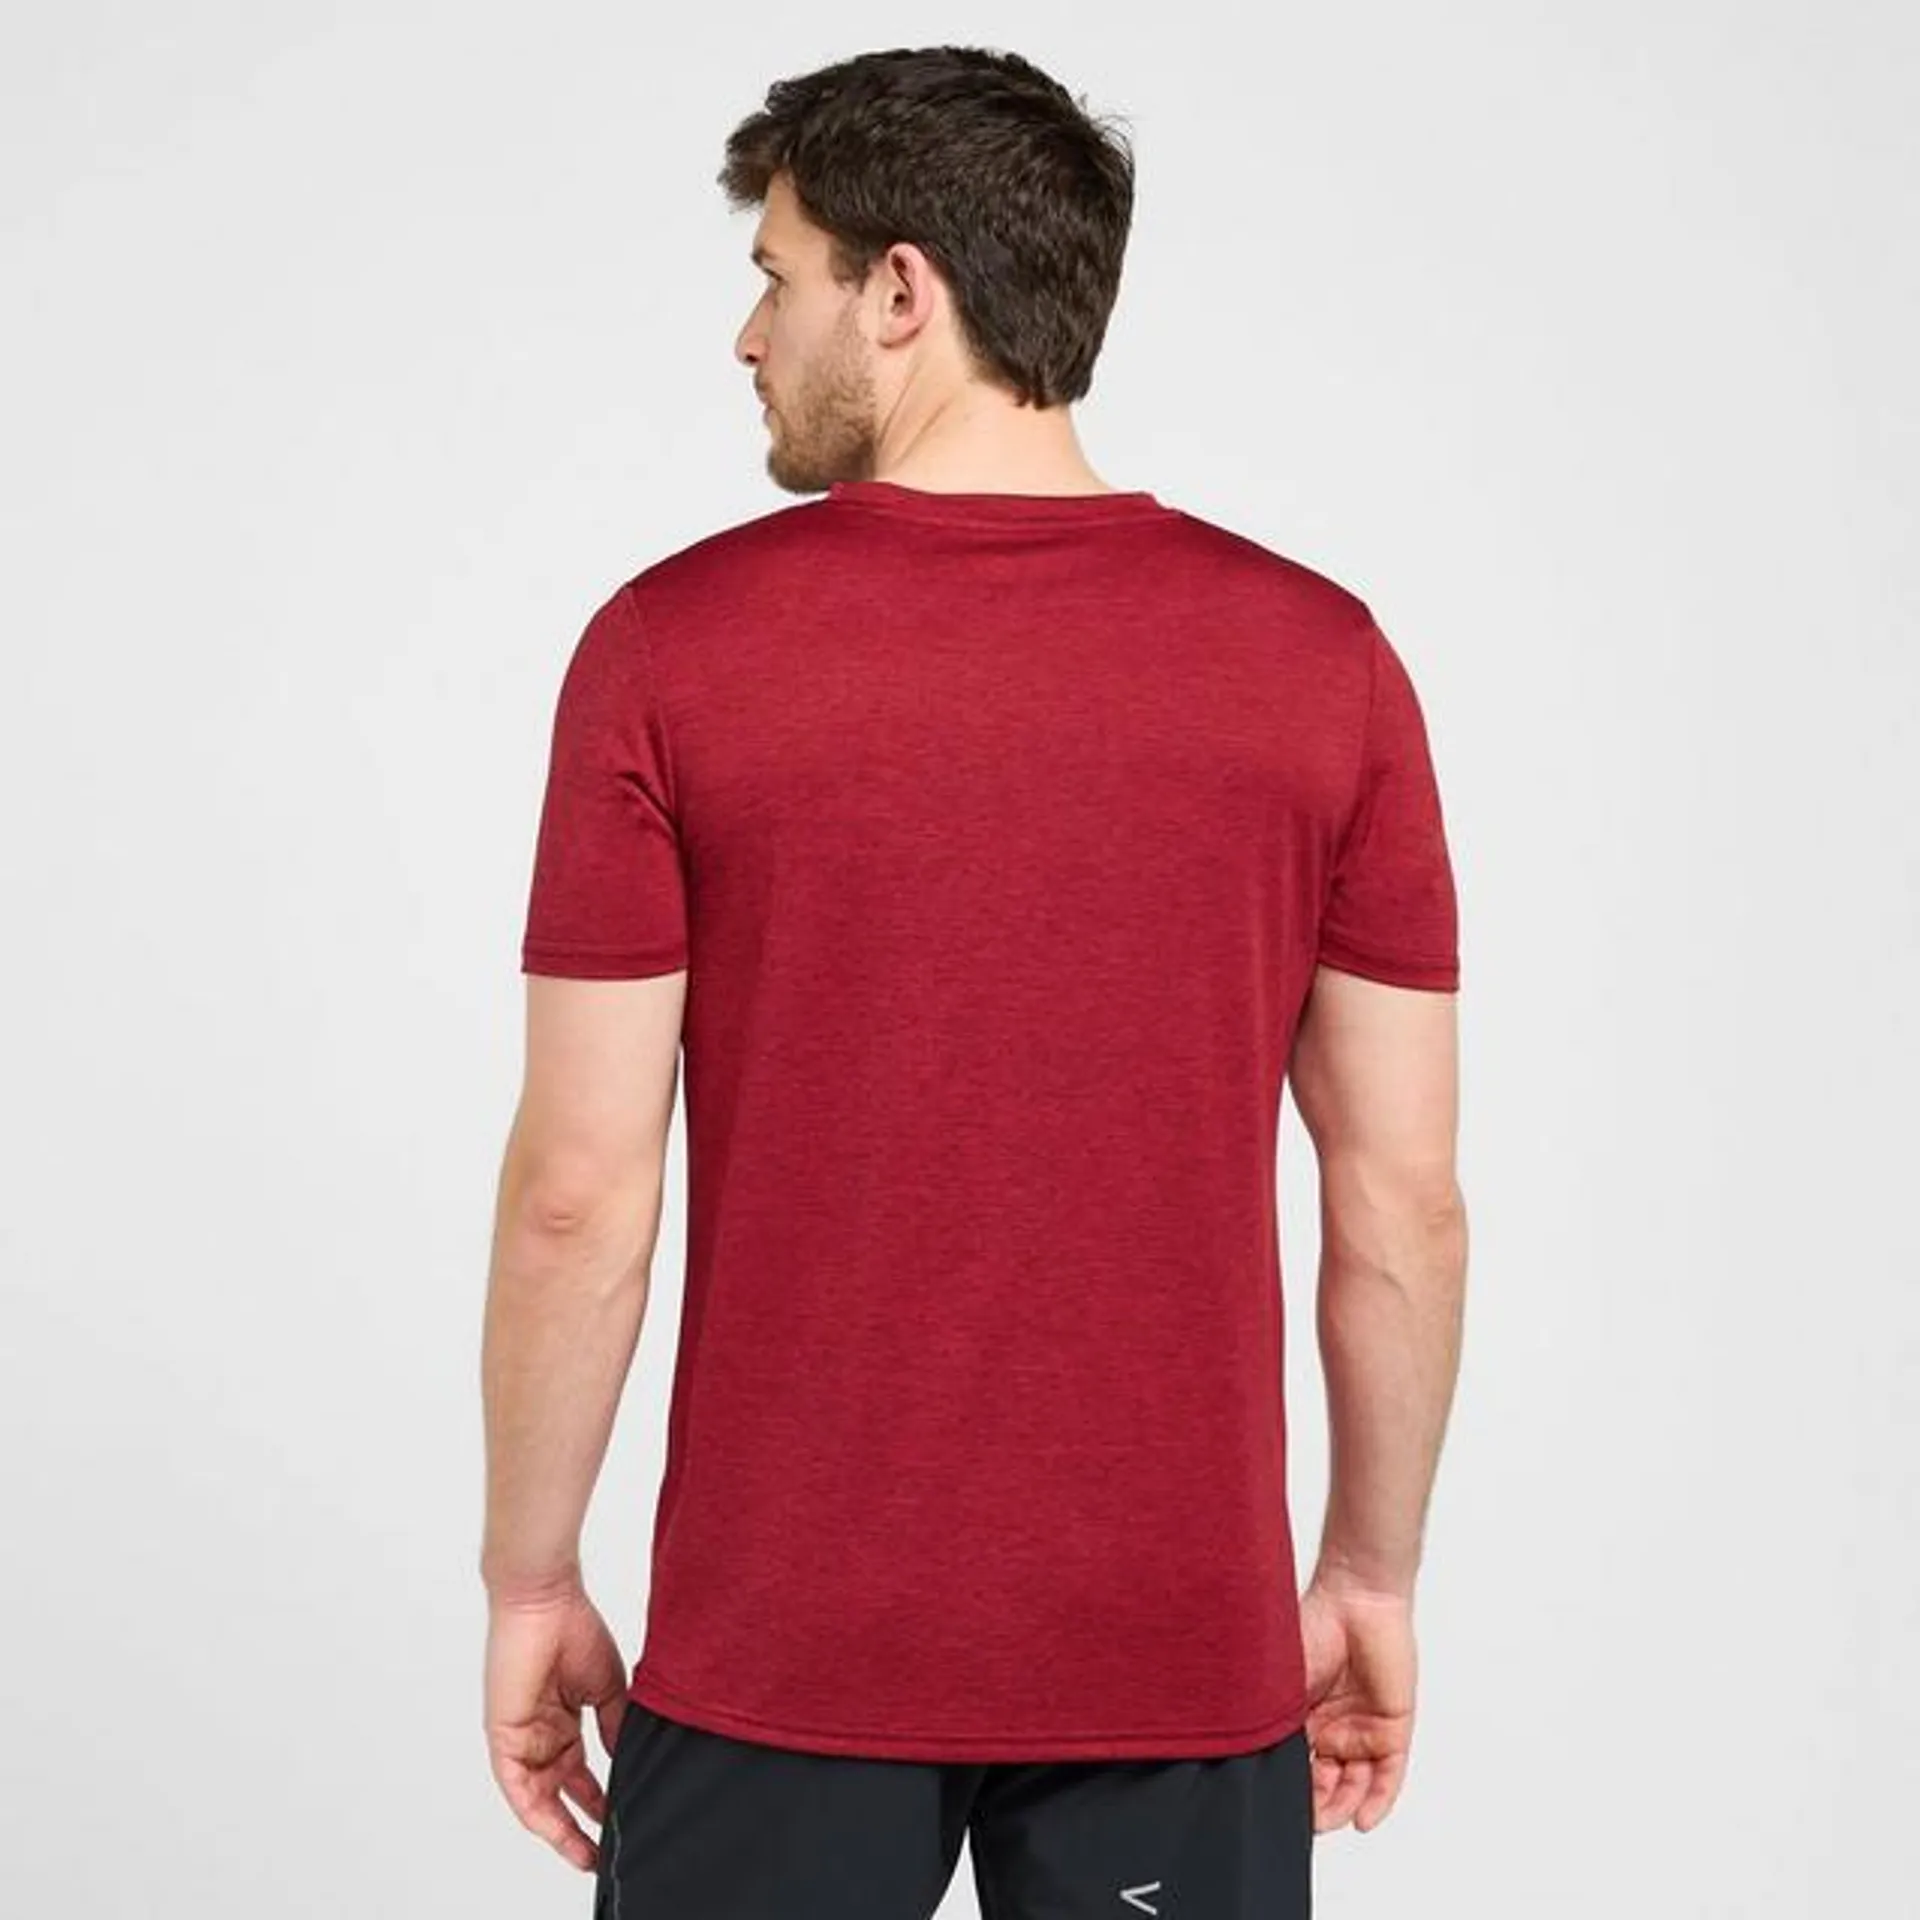 Men’s Active Short Sleeve T-Shirt